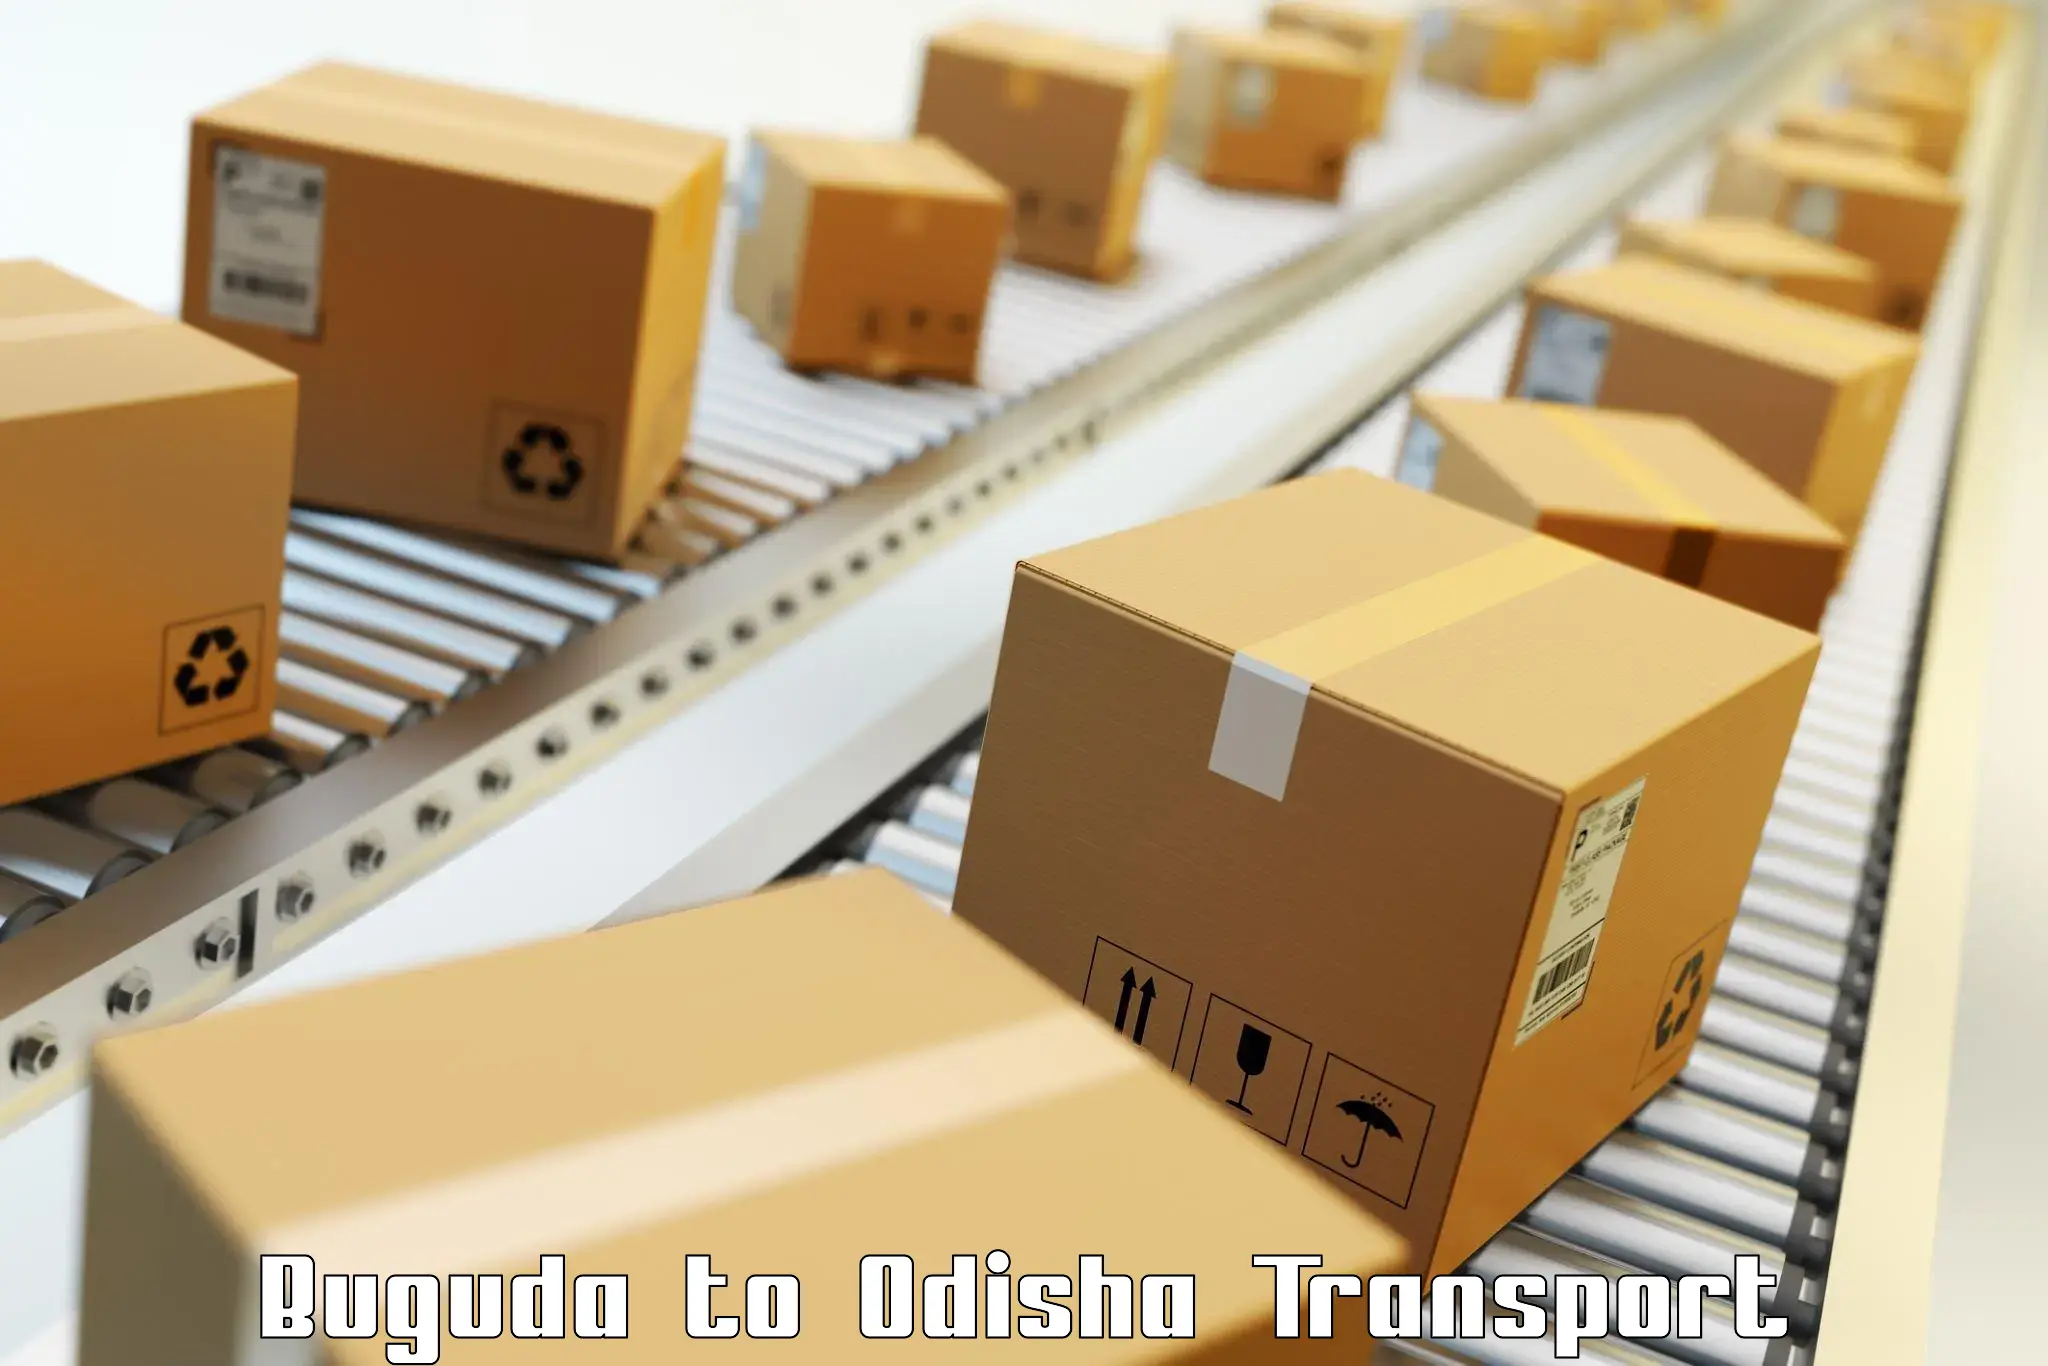 Cargo train transport services Buguda to Mohana